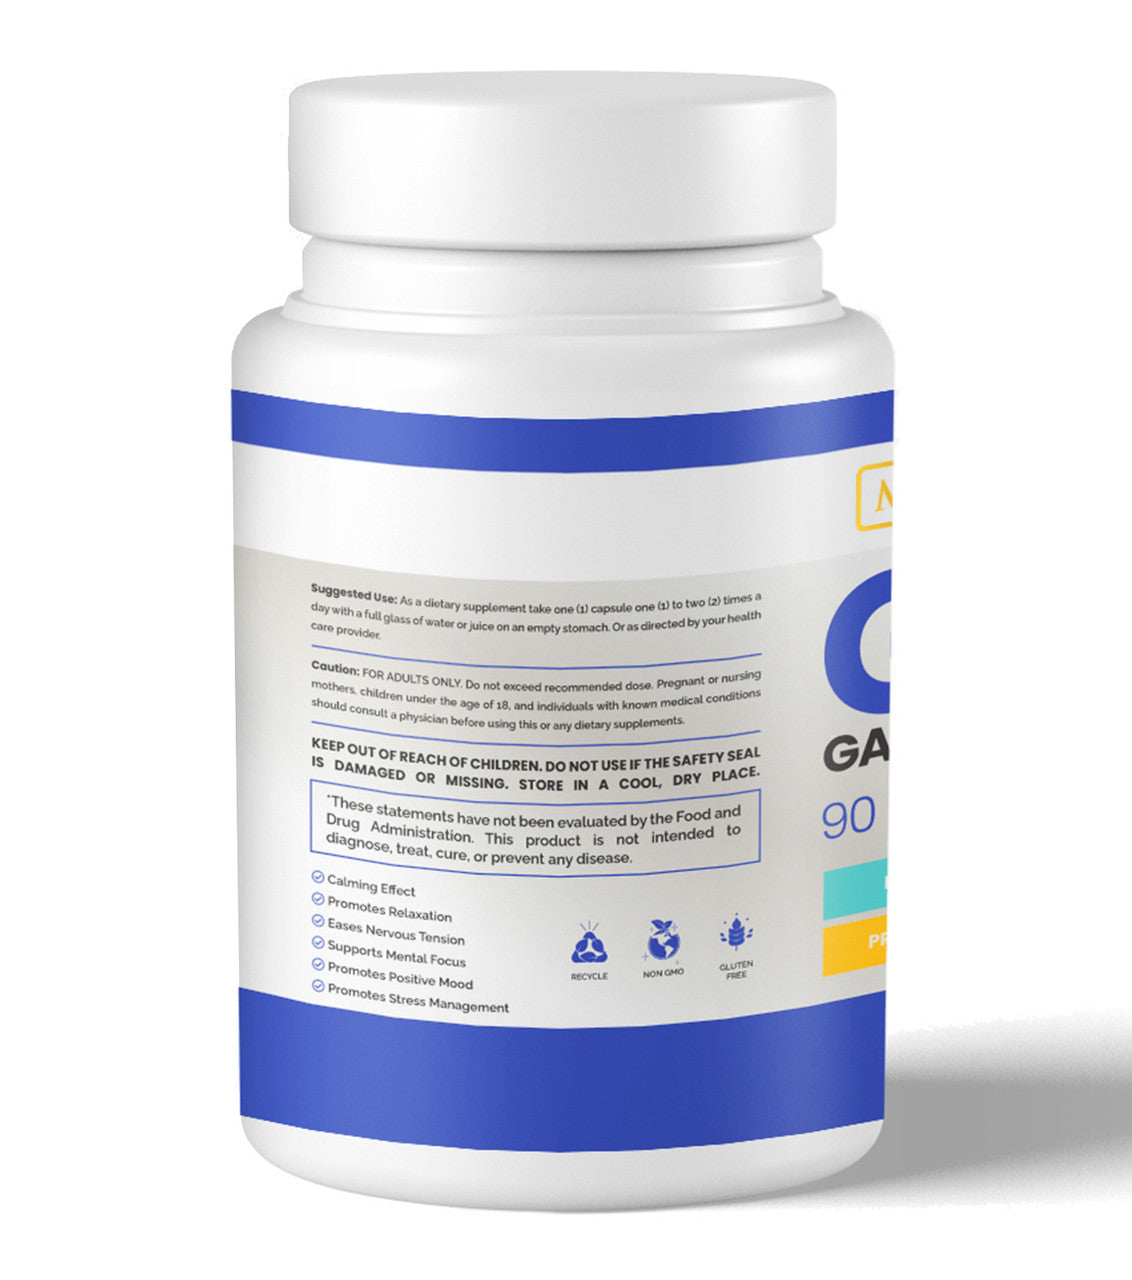 Gamma-Aminobutyric Acid (GABA)